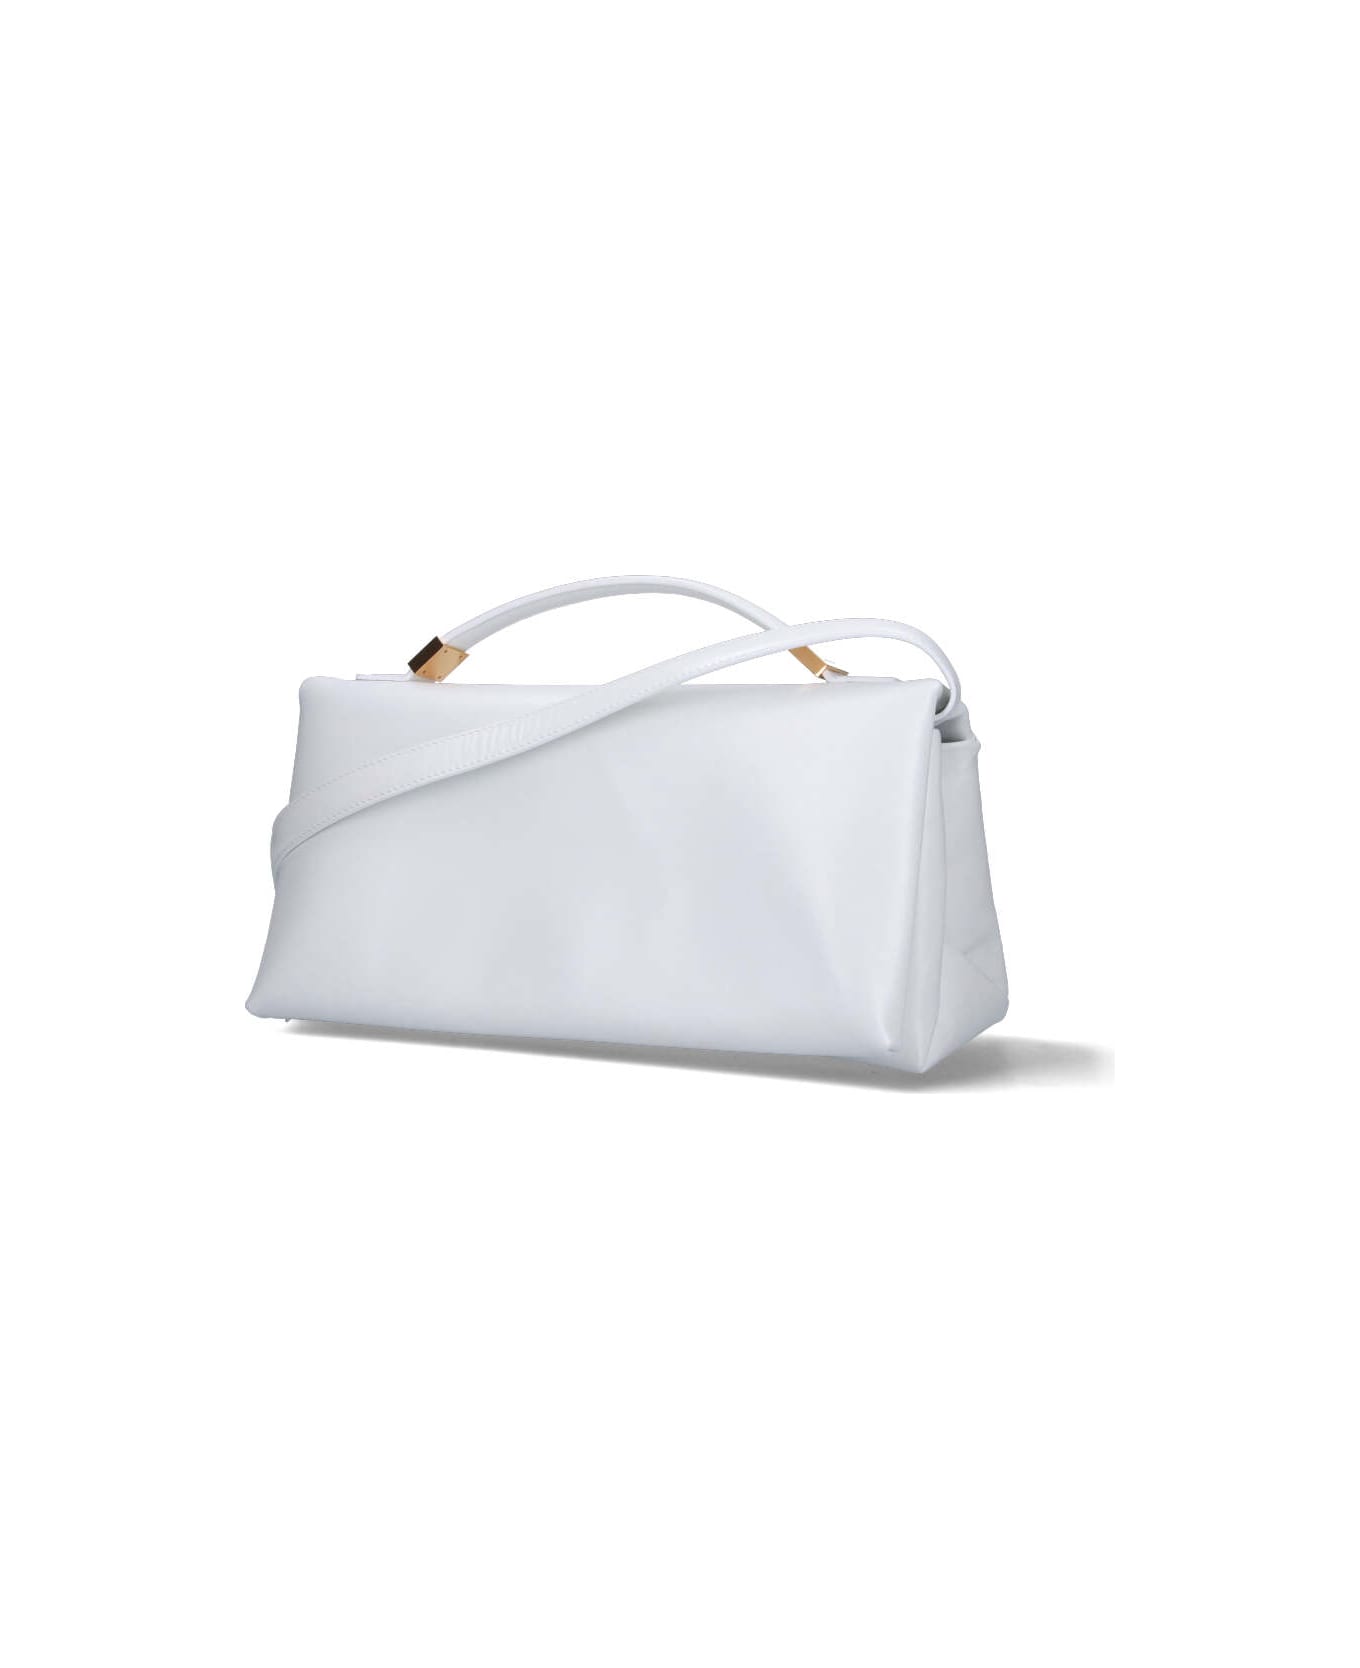 Marni 'prisma' Handbag - White トートバッグ